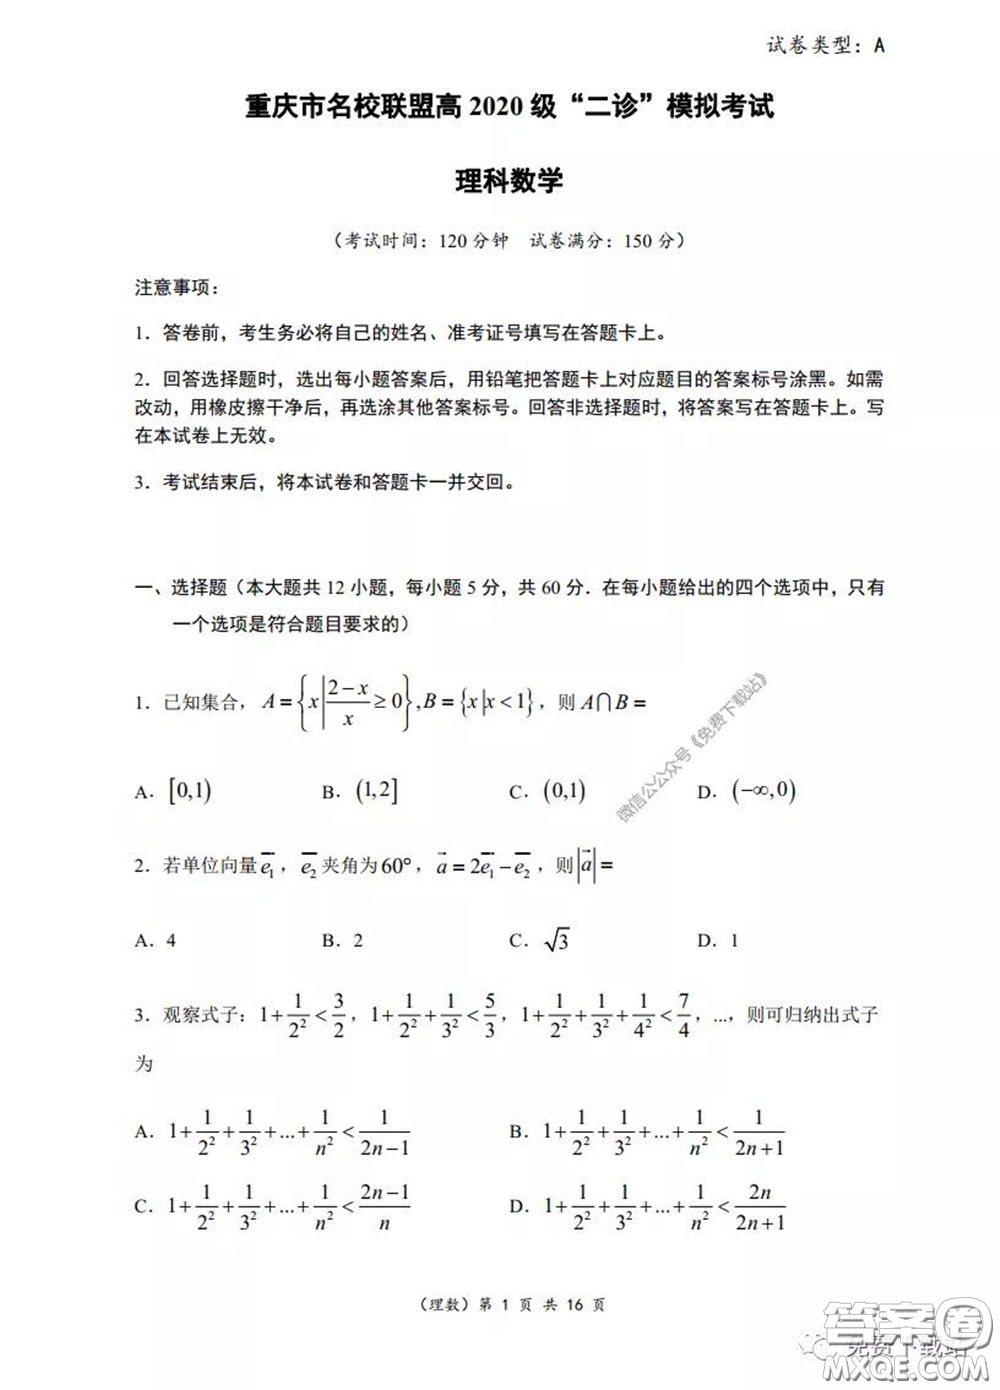 重庆市名校联盟高2020级二诊模拟考试理科数学试题及答案